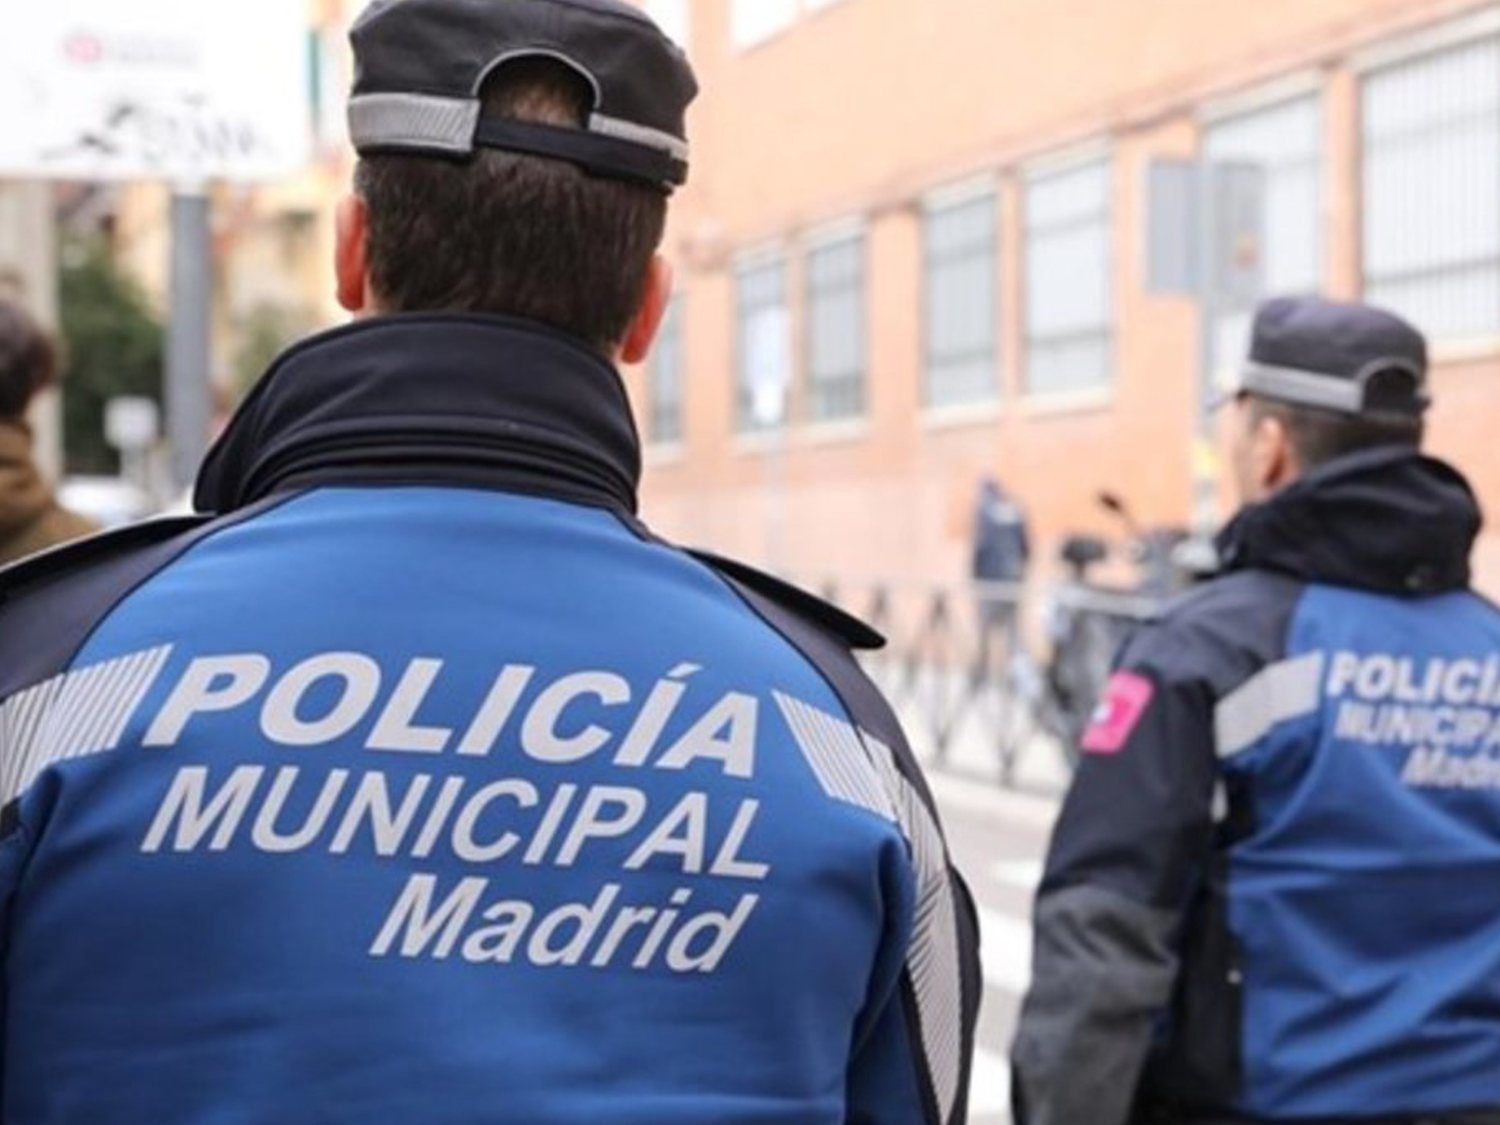 La Policía Municipal de Madrid "amenaza" con abofetear a quien no lleve mascarilla